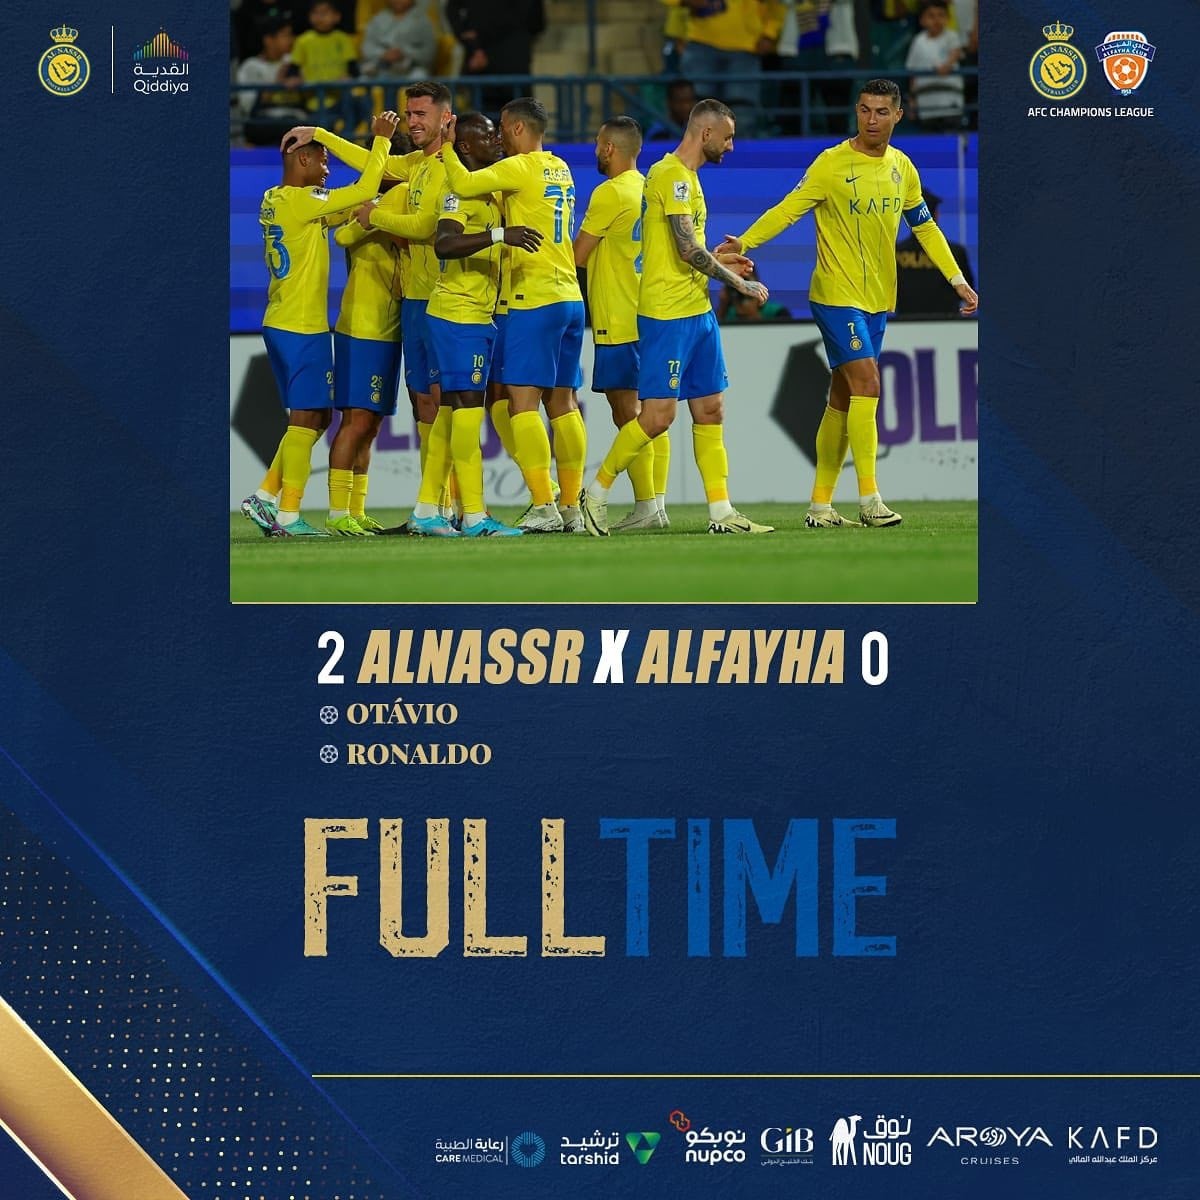 Thắng Al Fayha 2-0, Al Nassr giành quyền vào tứ kết AFC Champions League với tổng tỷ số 3-0.